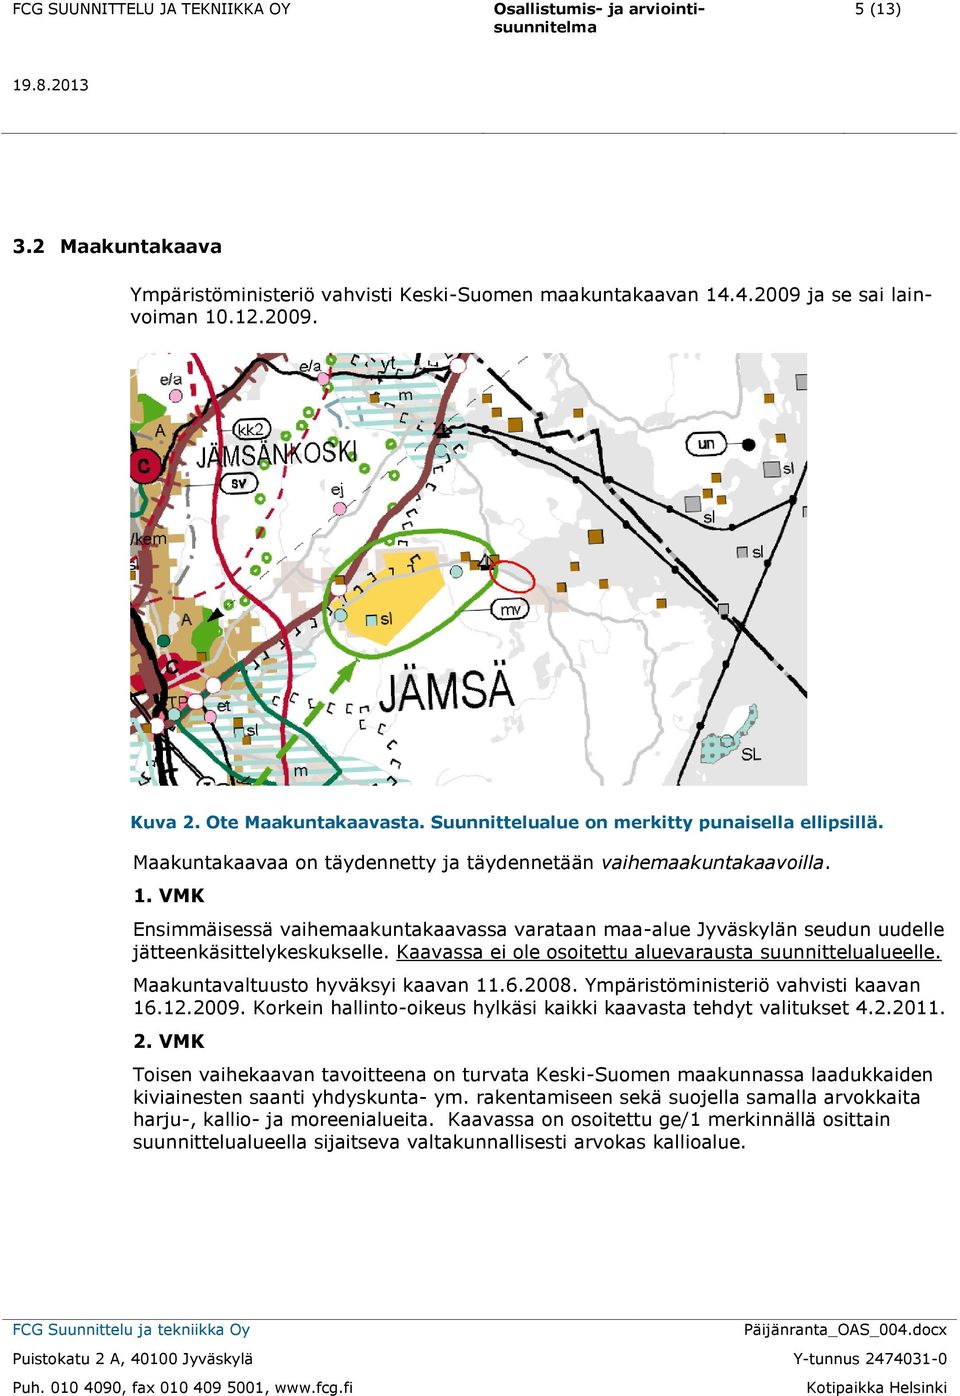 VMK Ensimmäisessä vaihemaakuntakaavassa varataan maa-alue Jyväskylän seudun uudelle jätteenkäsittelykeskukselle. Kaavassa ei ole osoitettu aluevarausta suunnittelualueelle.